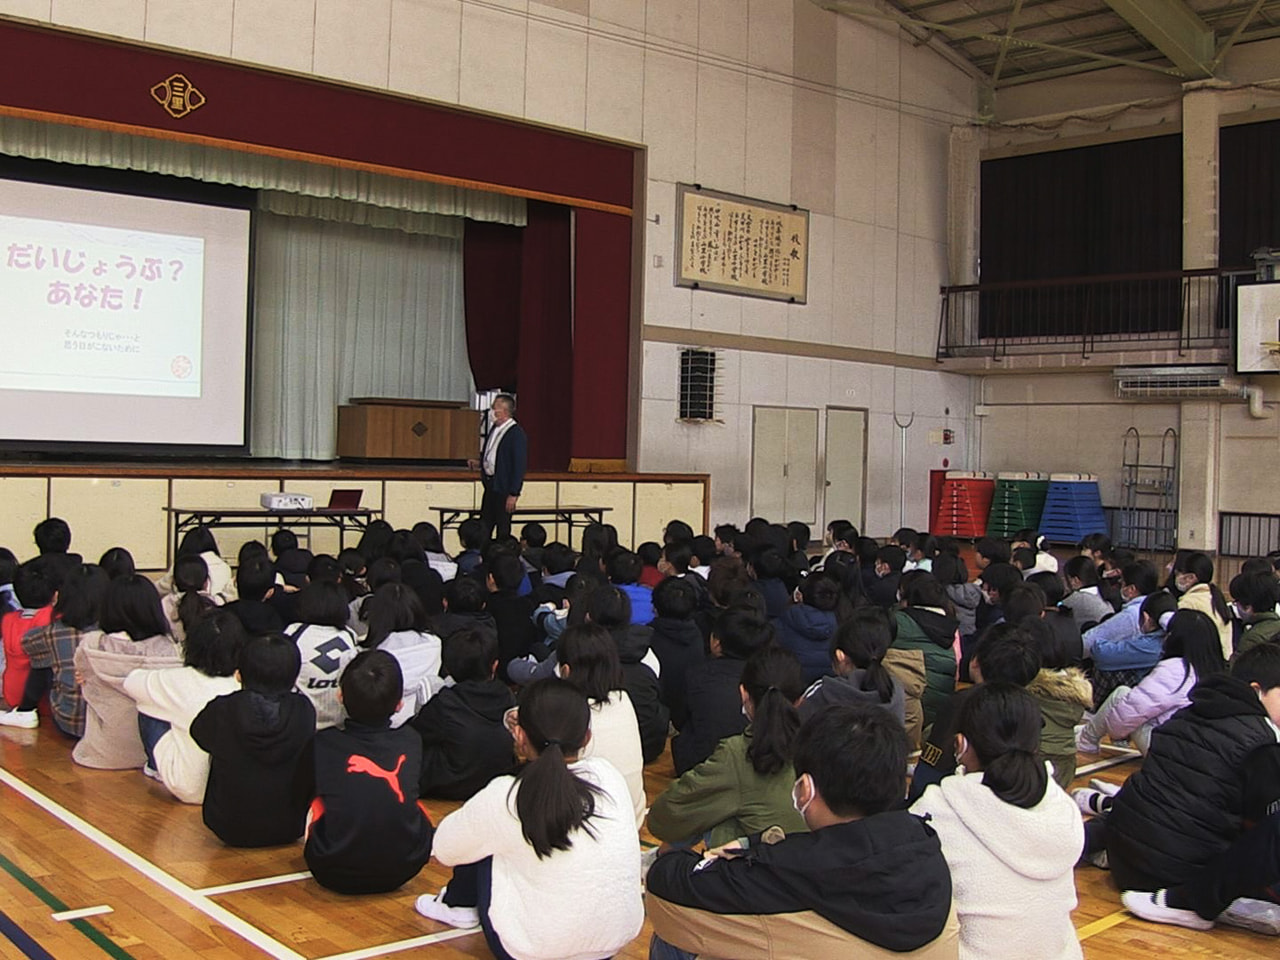 インターネットの安全な使い方を学ぶ講演会が６日、岐阜市の小学校で行われ、子どもた...